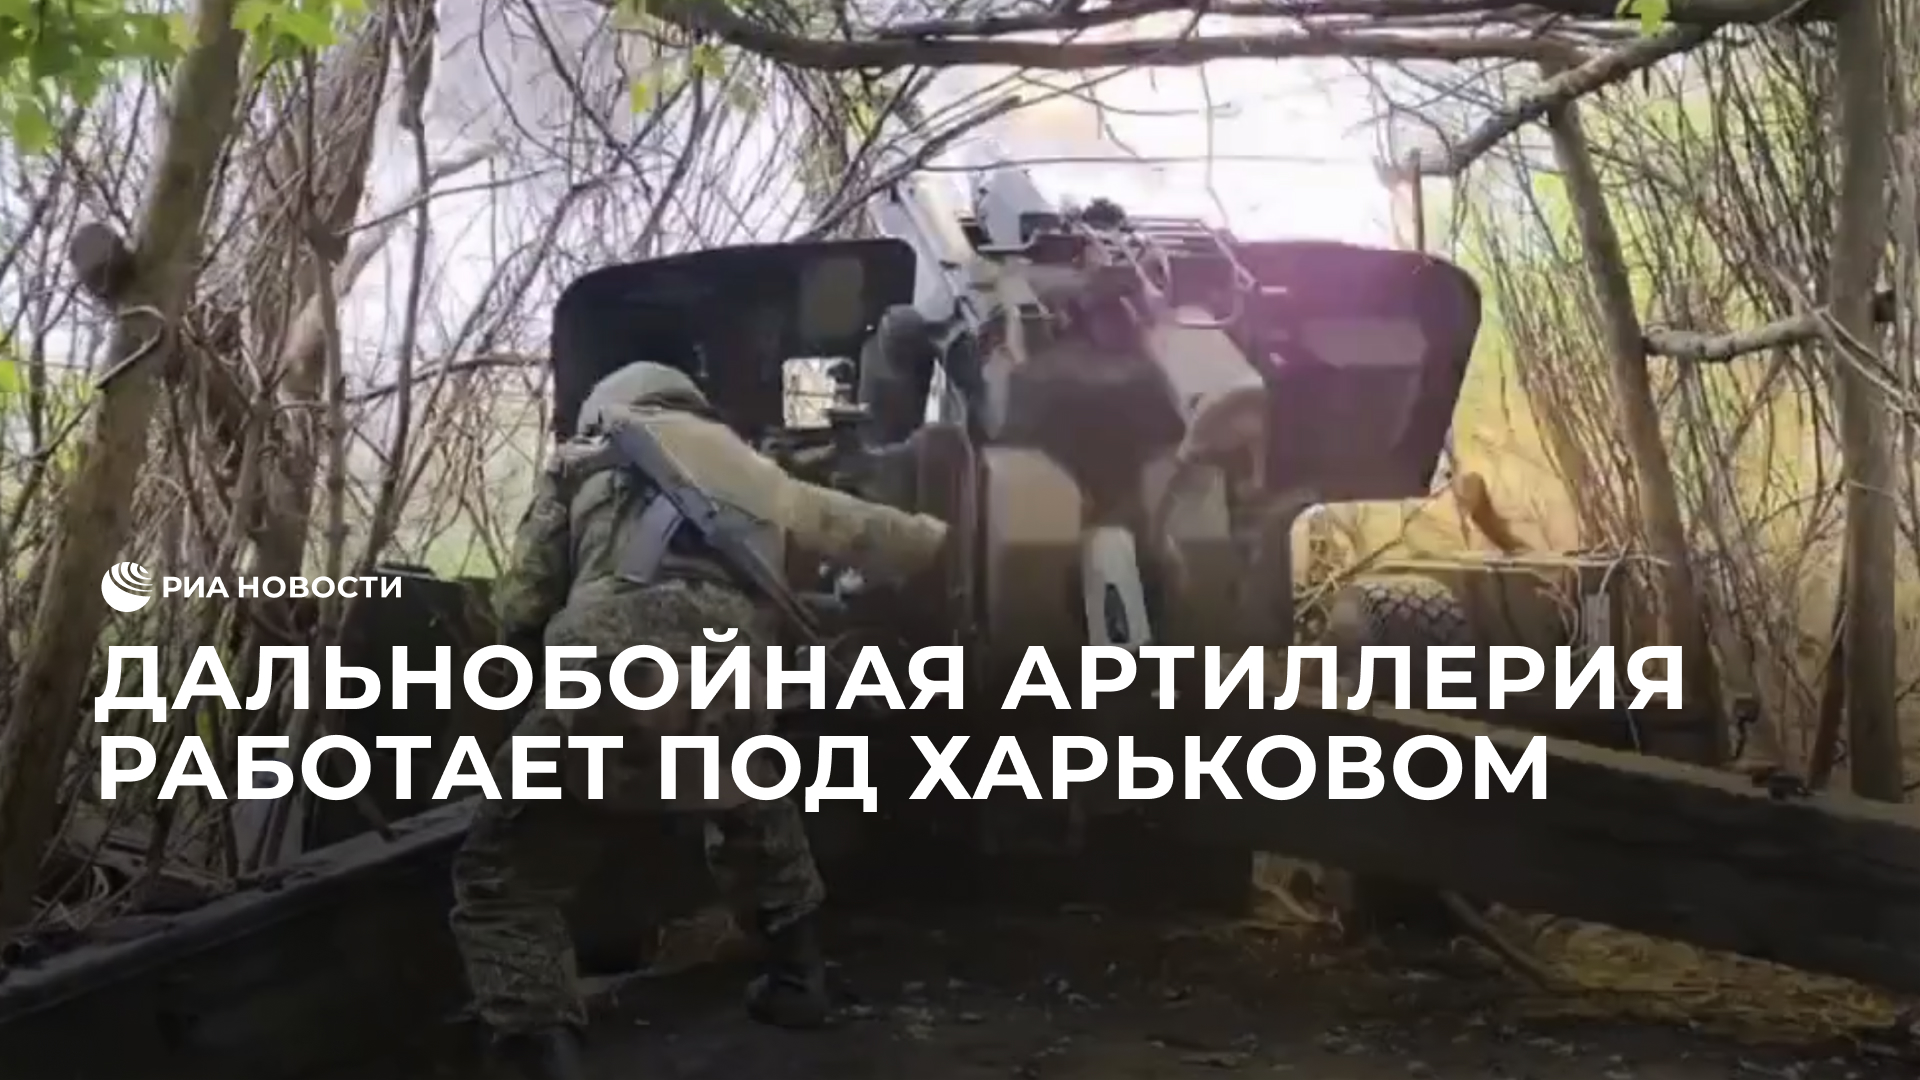 Дальнобойная артиллерия работает под Харьковом